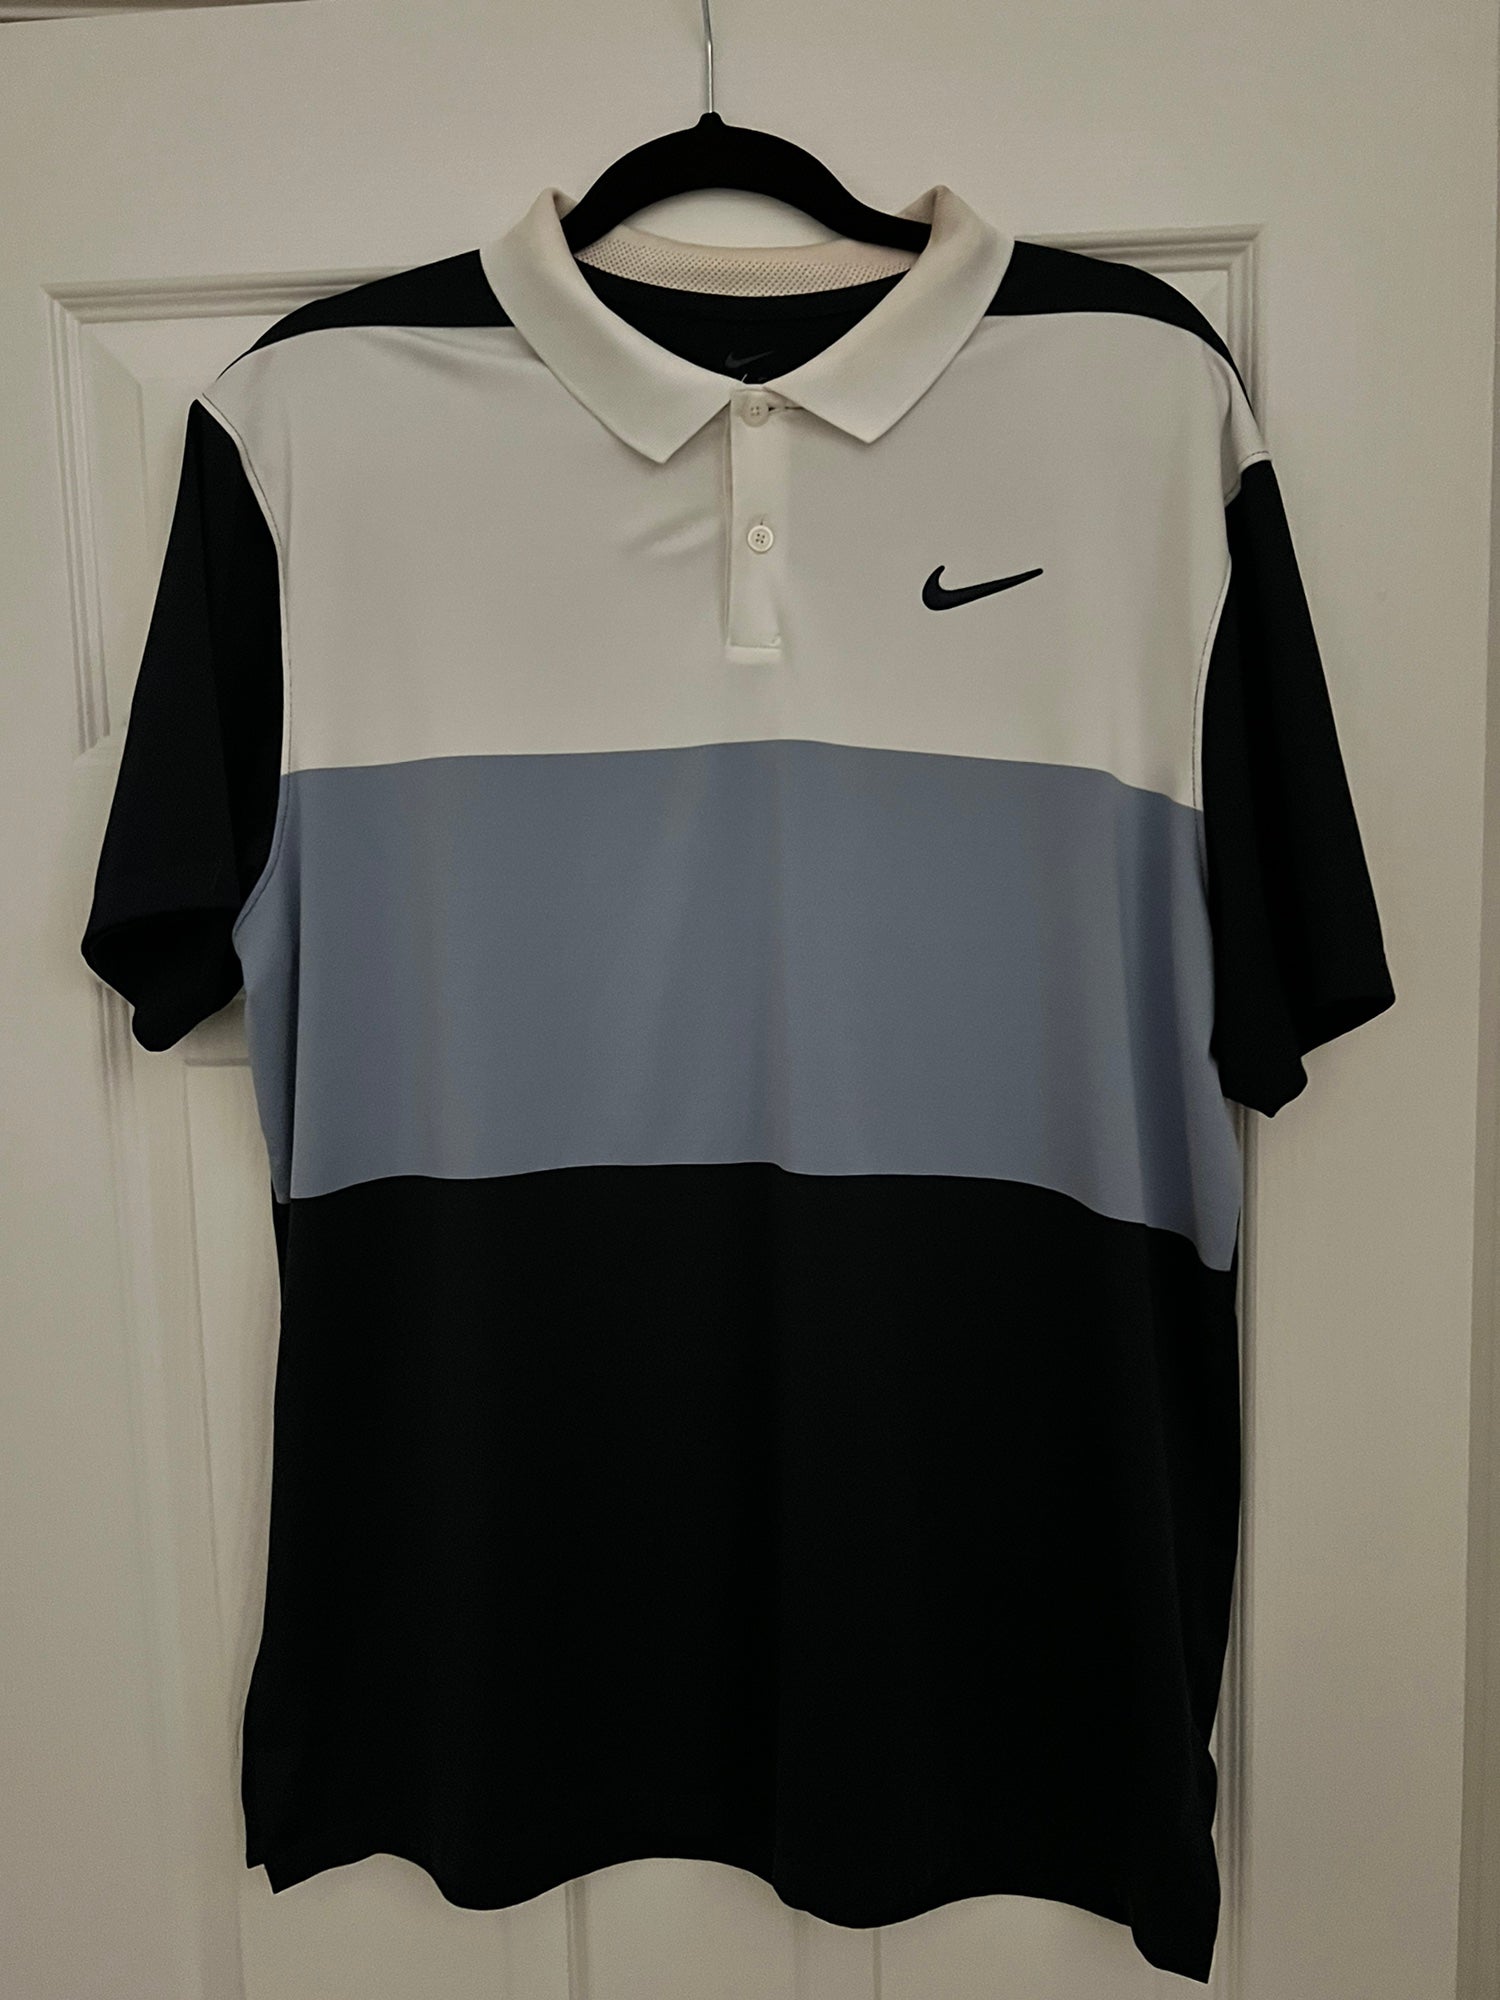 Omgekeerd vice versa Idioot Nike Golf Polo Shirt | SidelineSwap